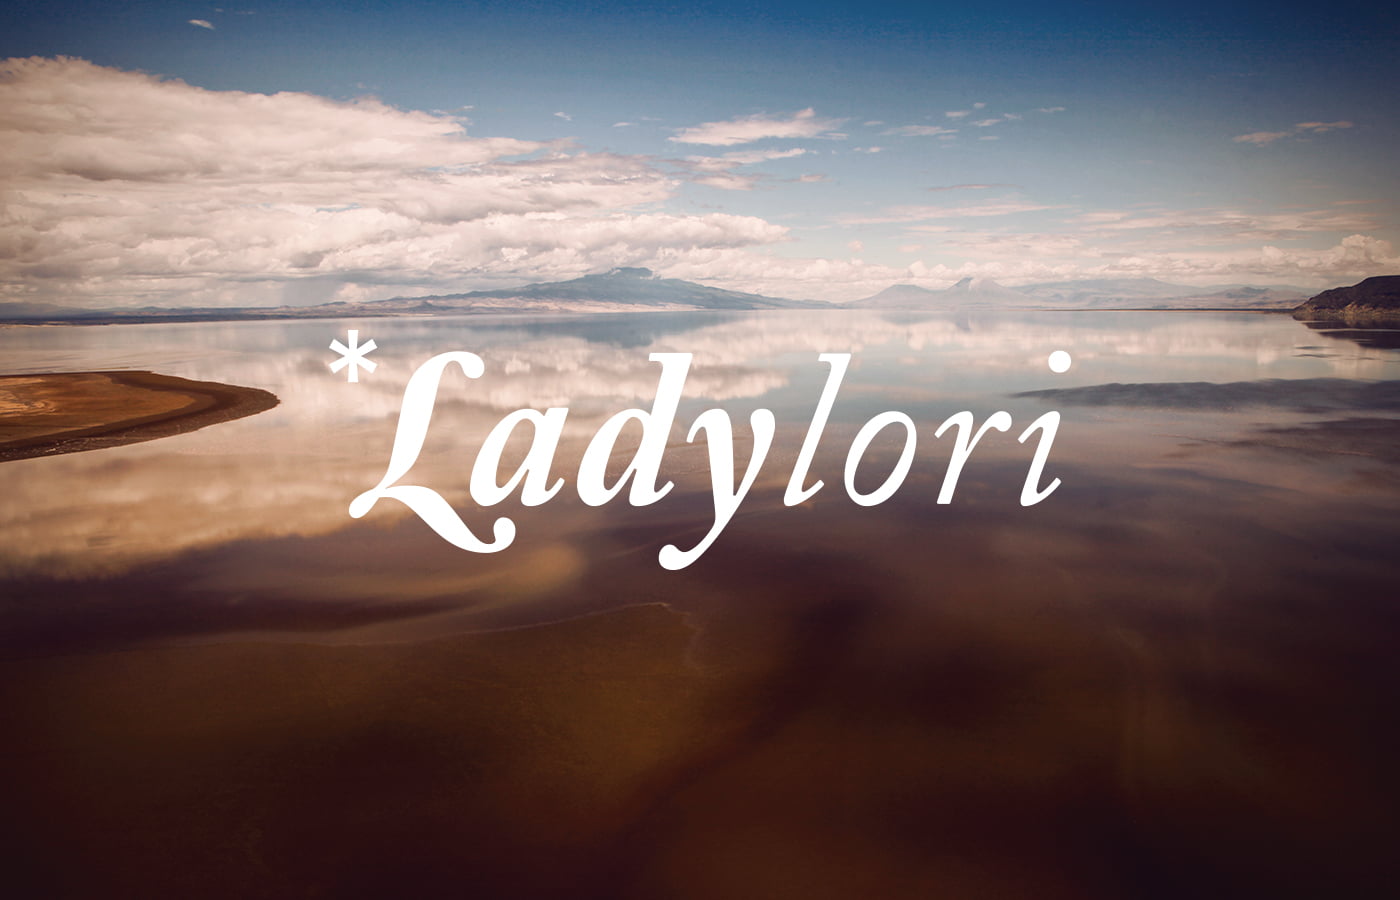 Lady_Lori_1